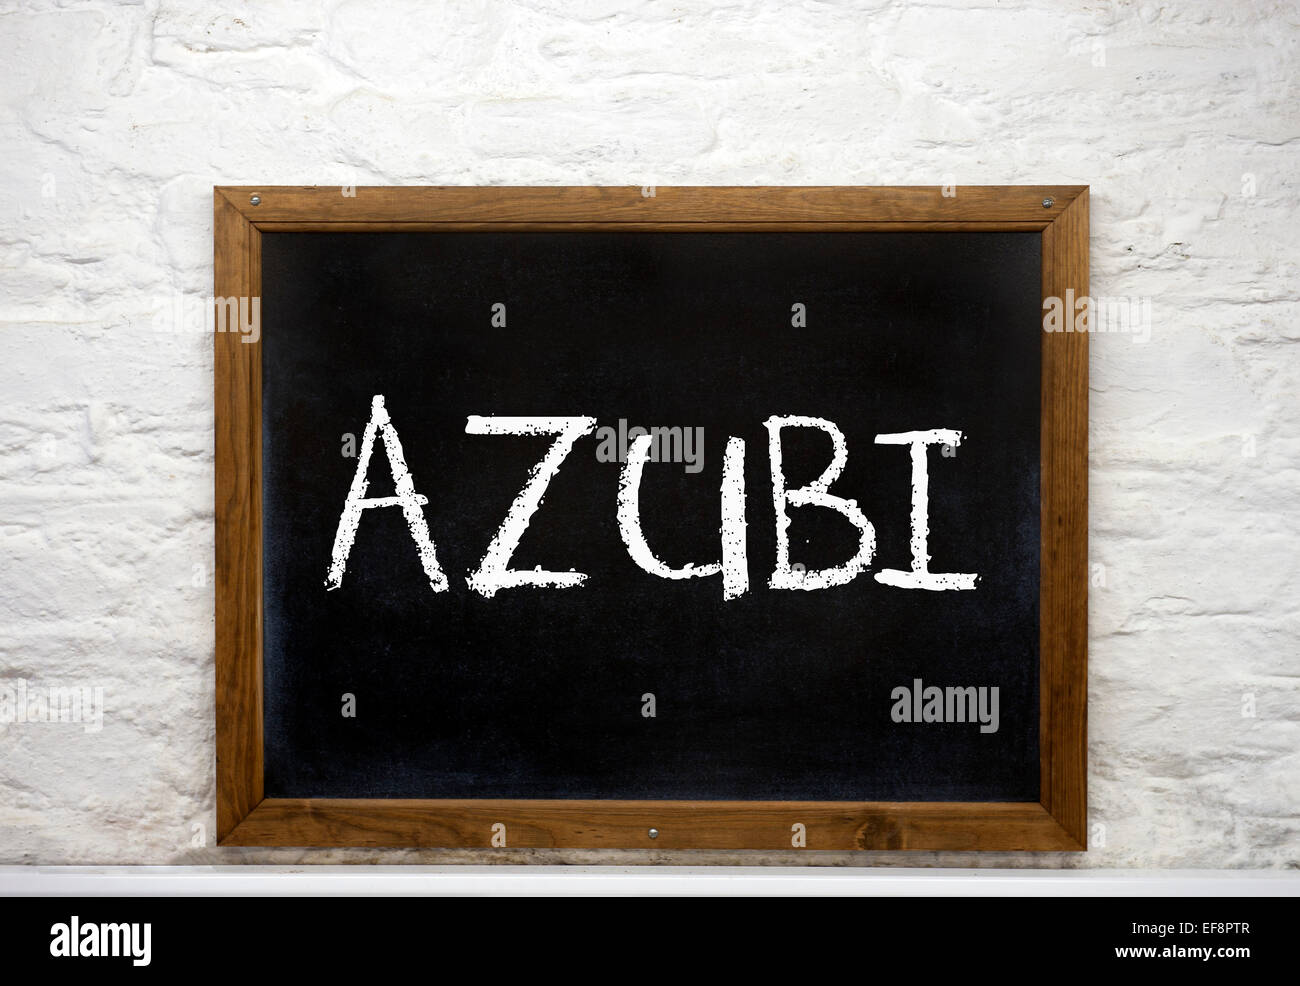 Lavagna con la parola 'Azubi', Tedesco per apprendista Foto Stock